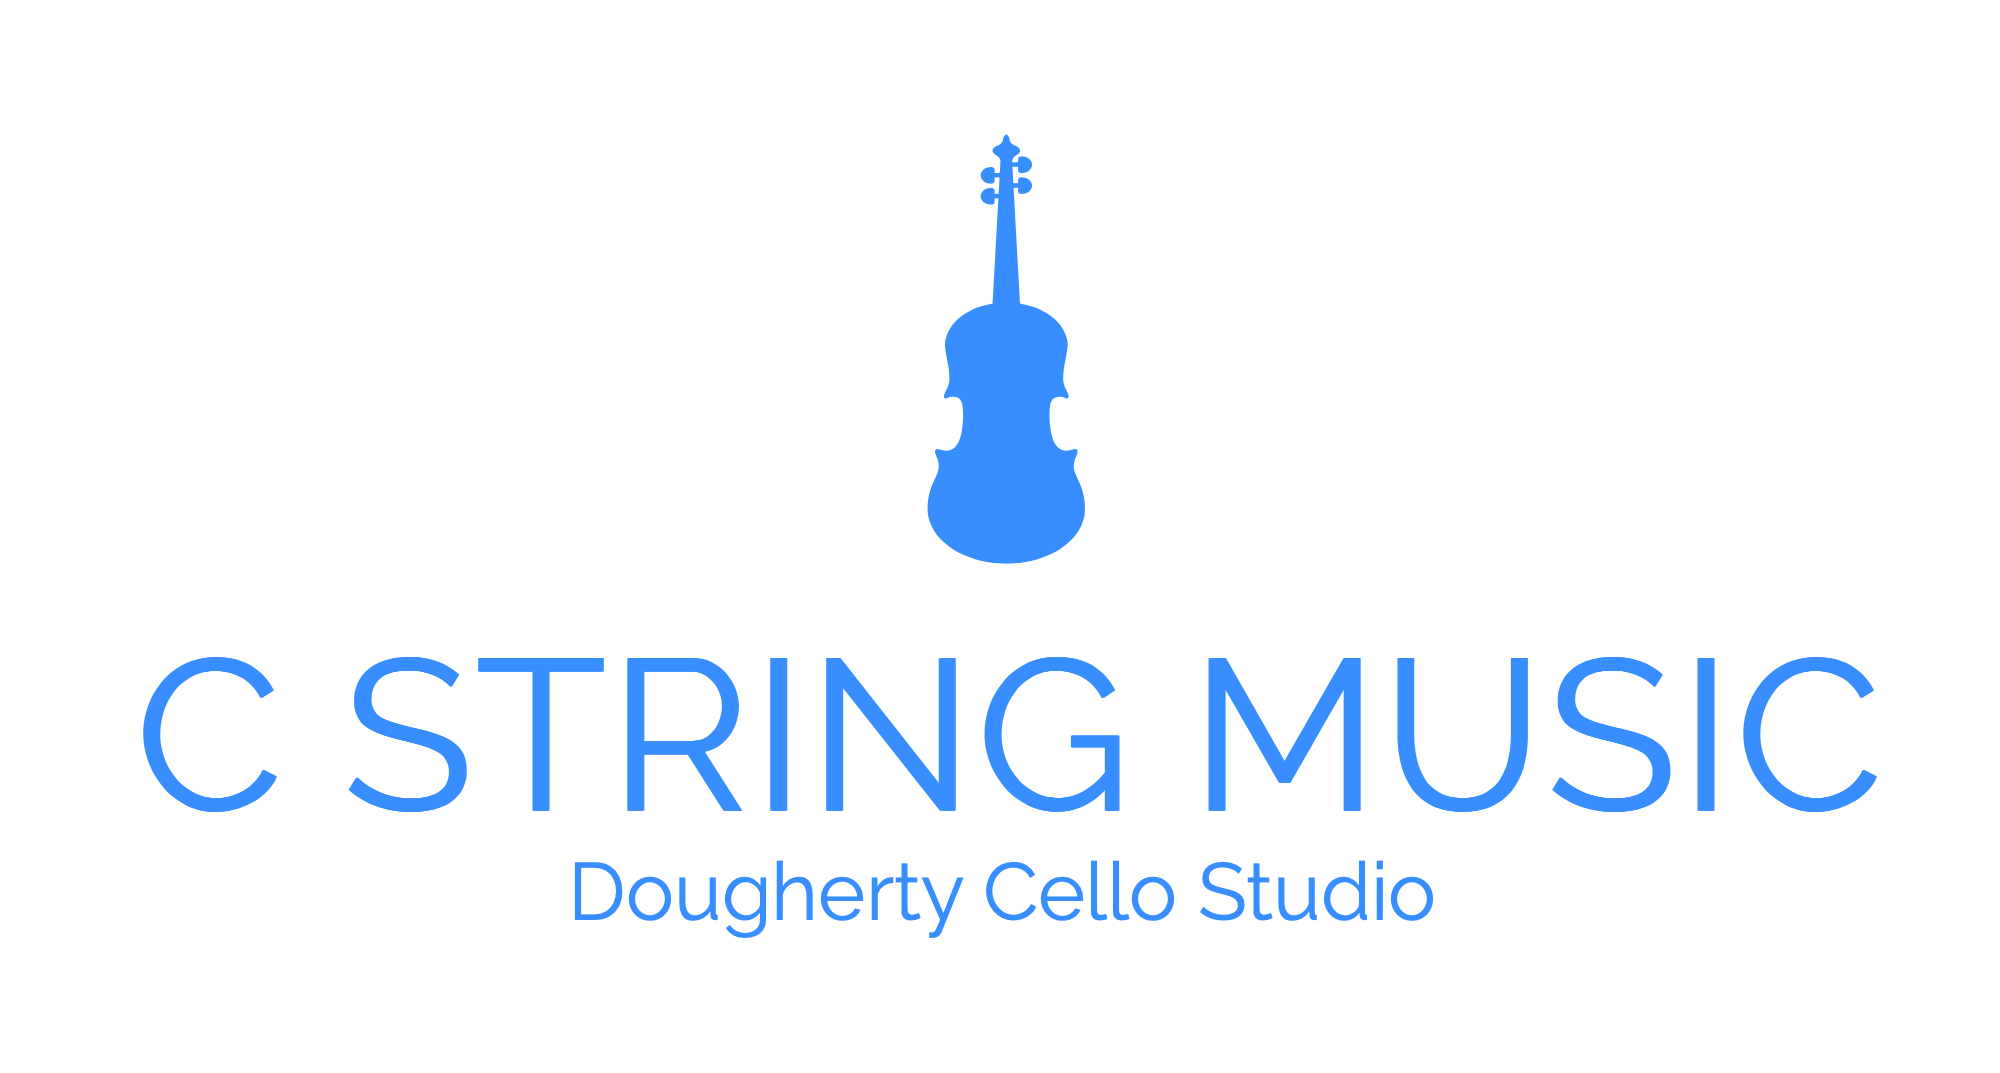 C String Music Studios